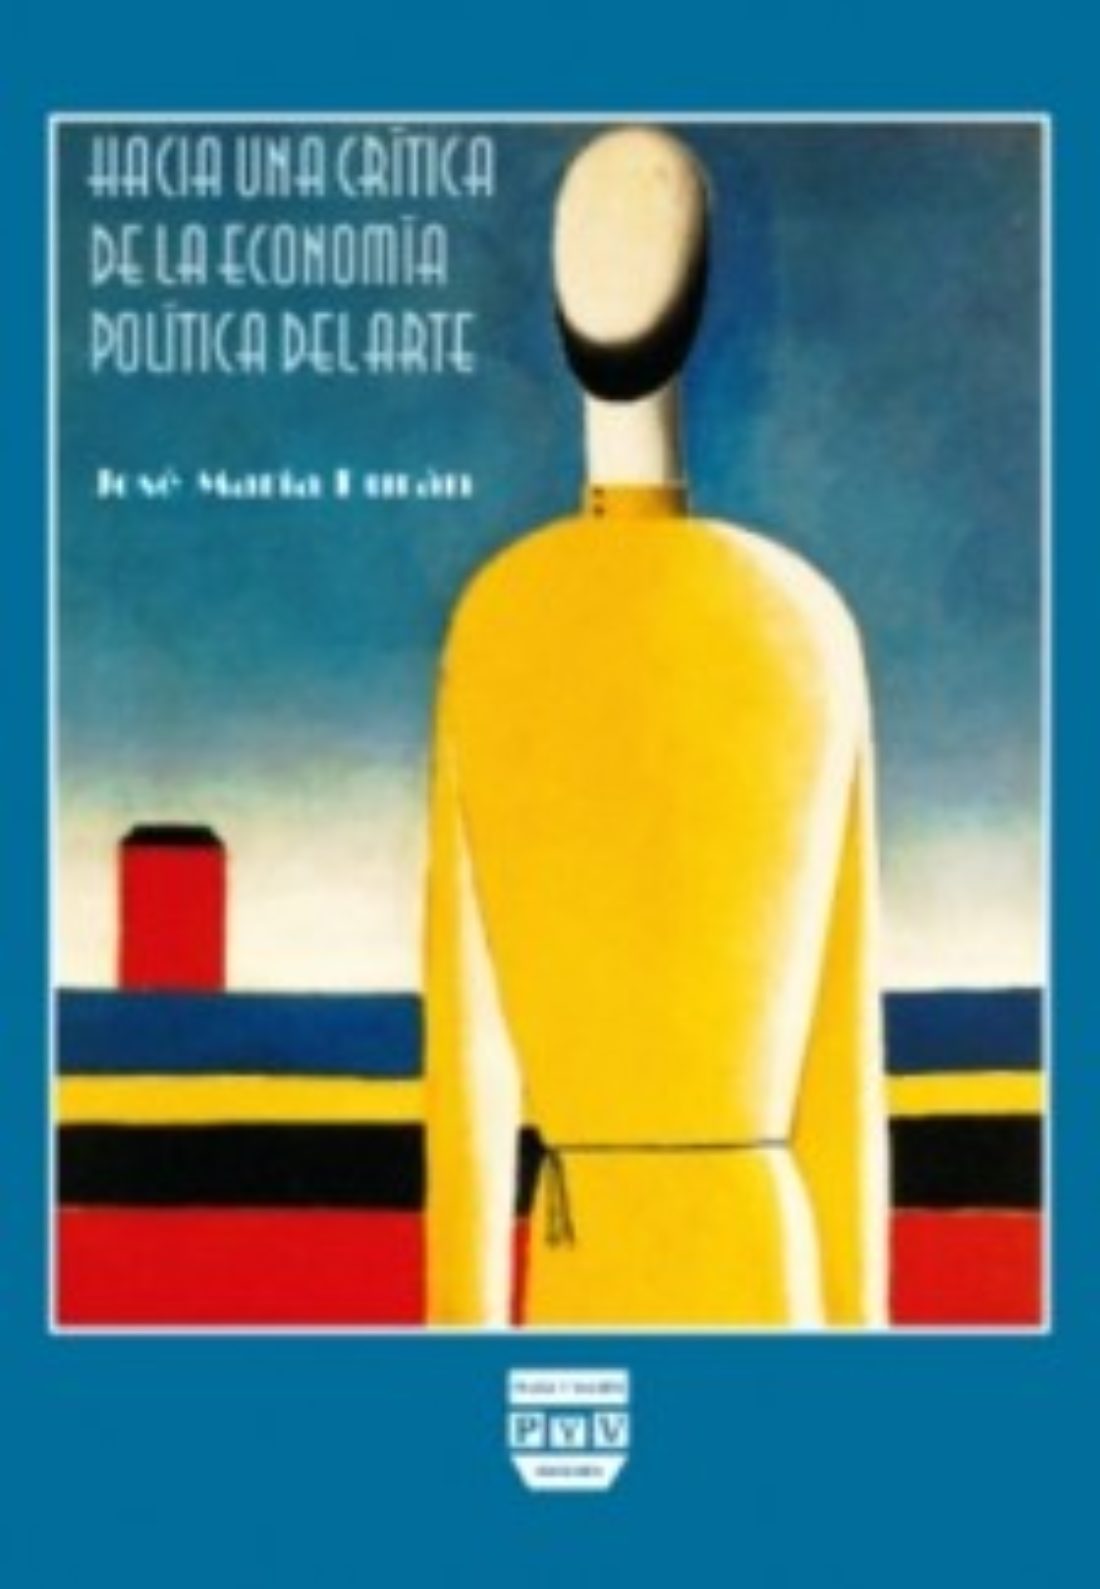 Madrid : presentación del libro «Hacia una crítica de la economía política del arte»